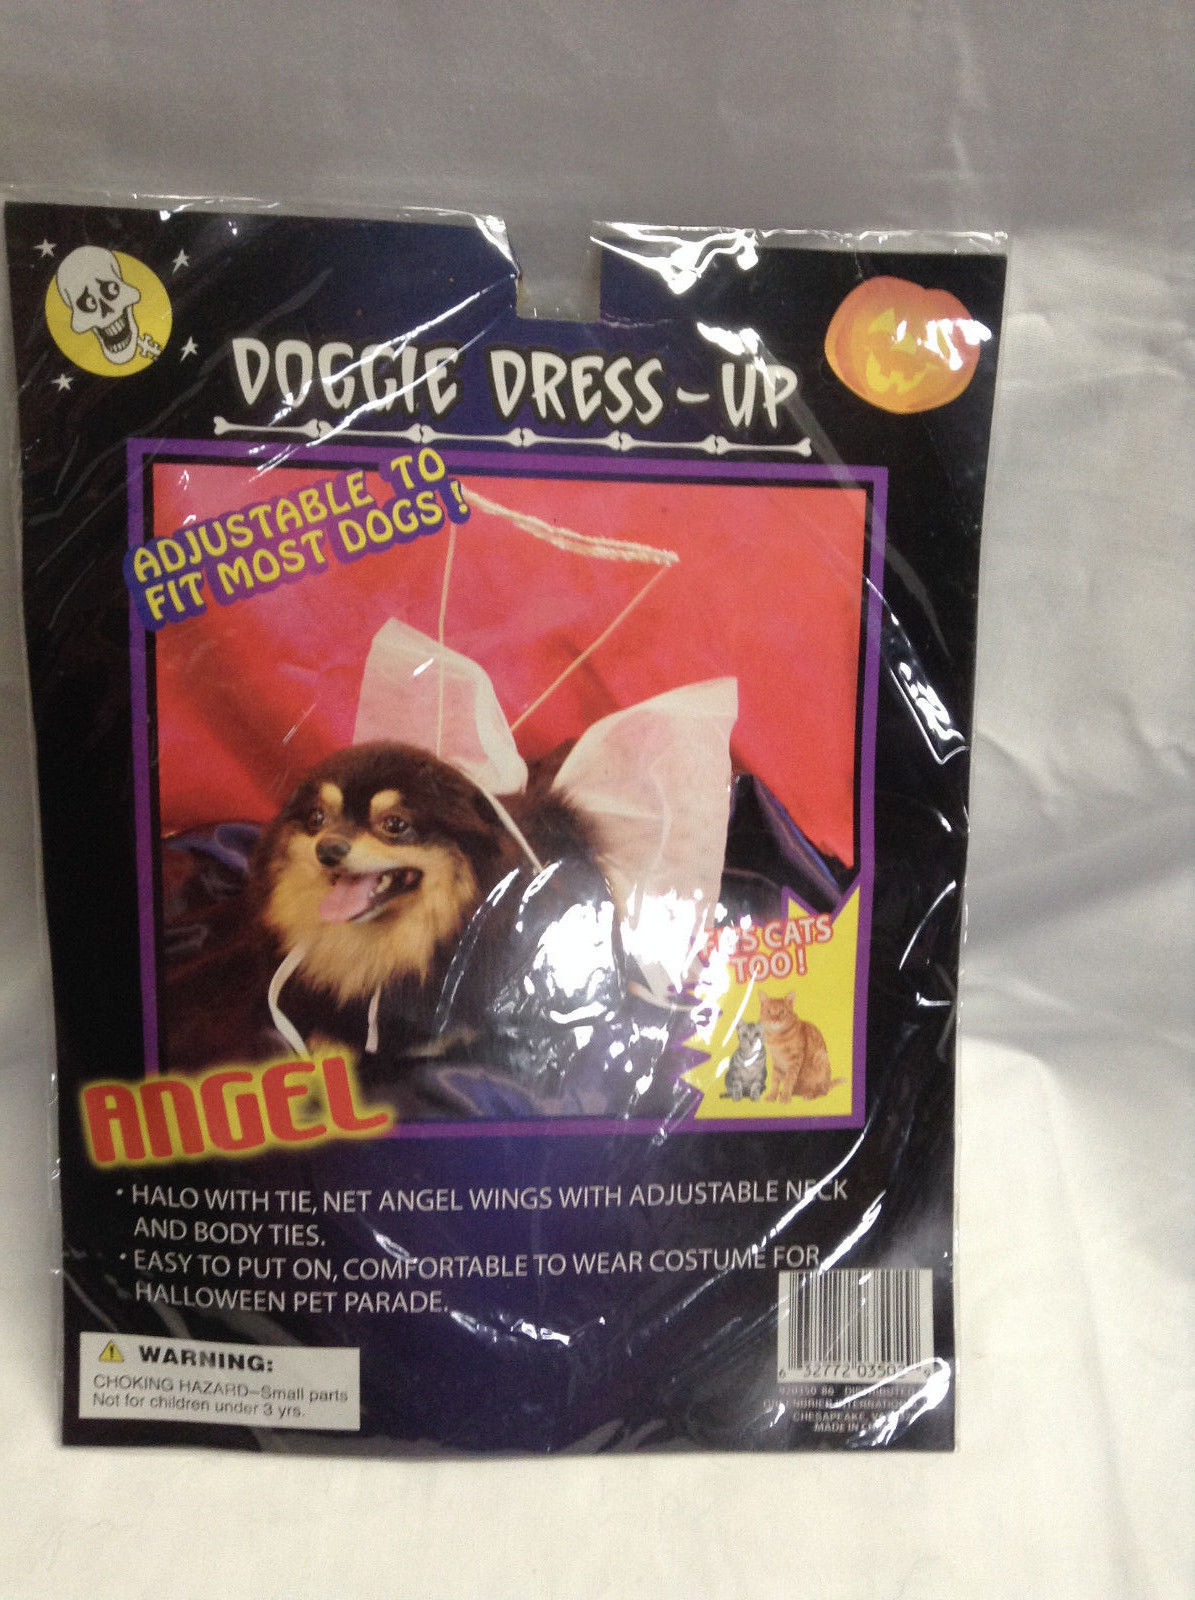 Doggie Dress-Up "Angel" Costume